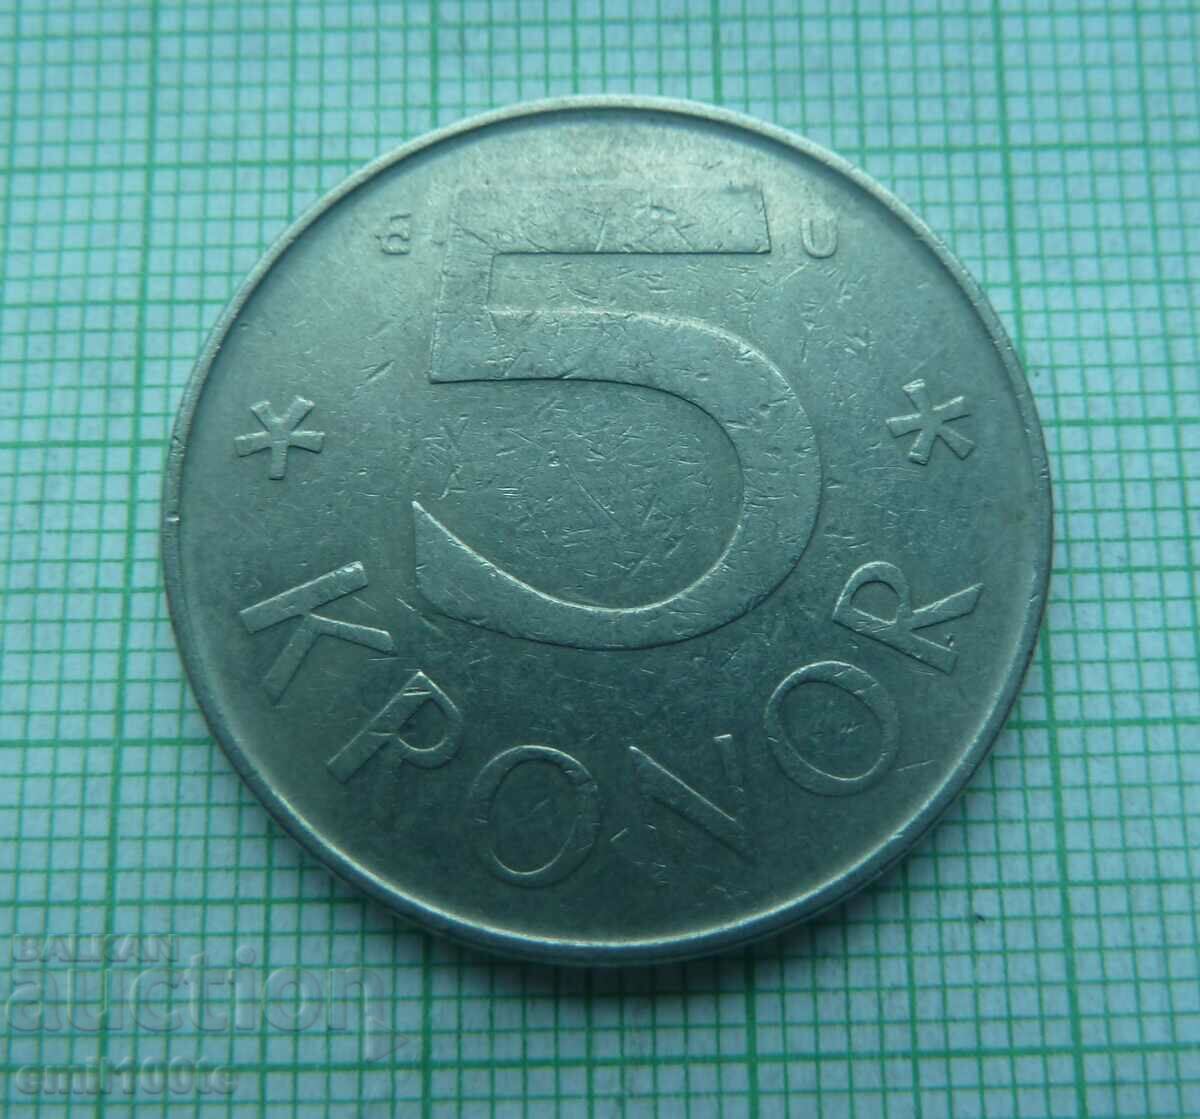 5 kroner 1982 Sweden